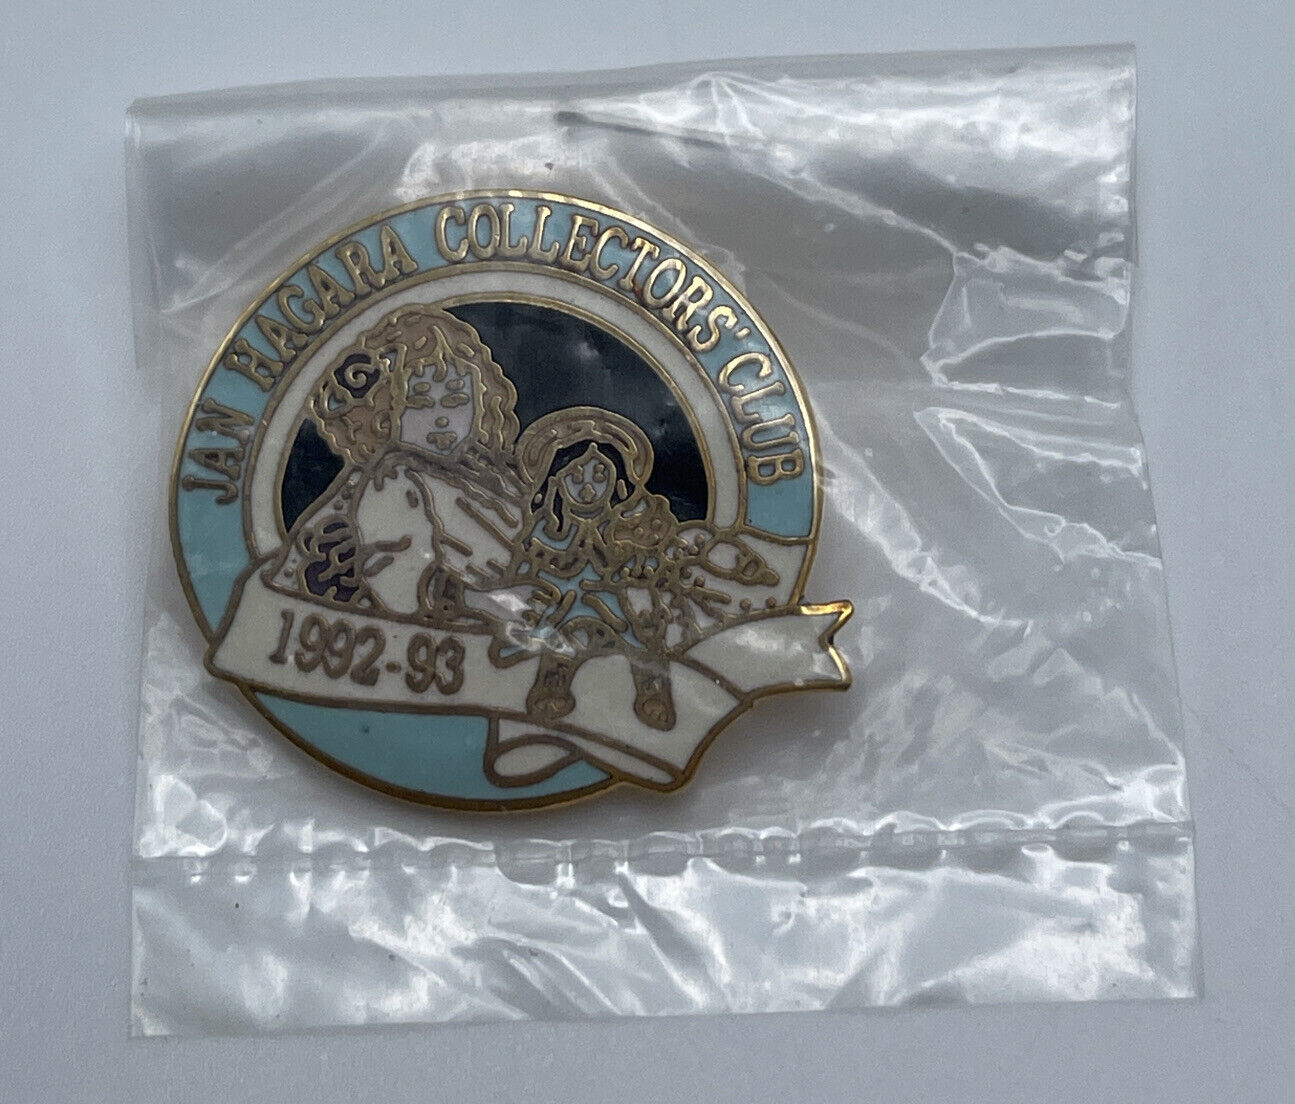 Jan Hagara 1992-1993 Collectors Club Vintage Lapel Pin